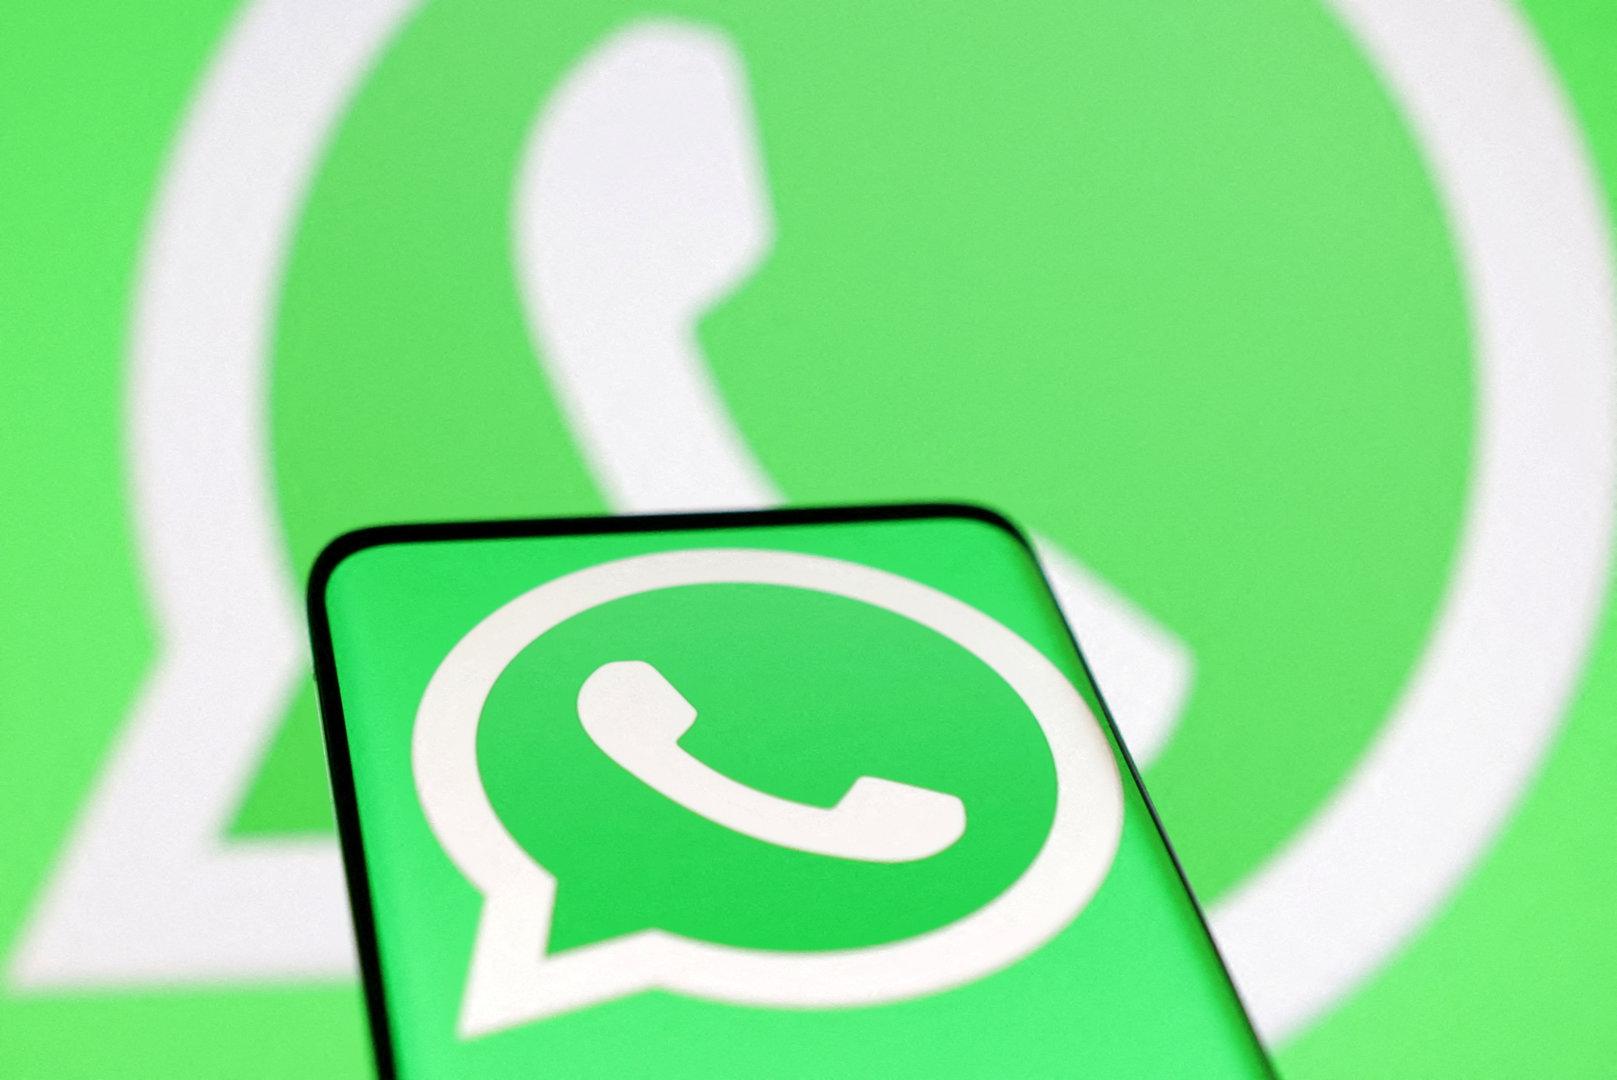 WhatsApp-Betrug mit 524.000 Euro Forderung: Zwei Jahre Haft